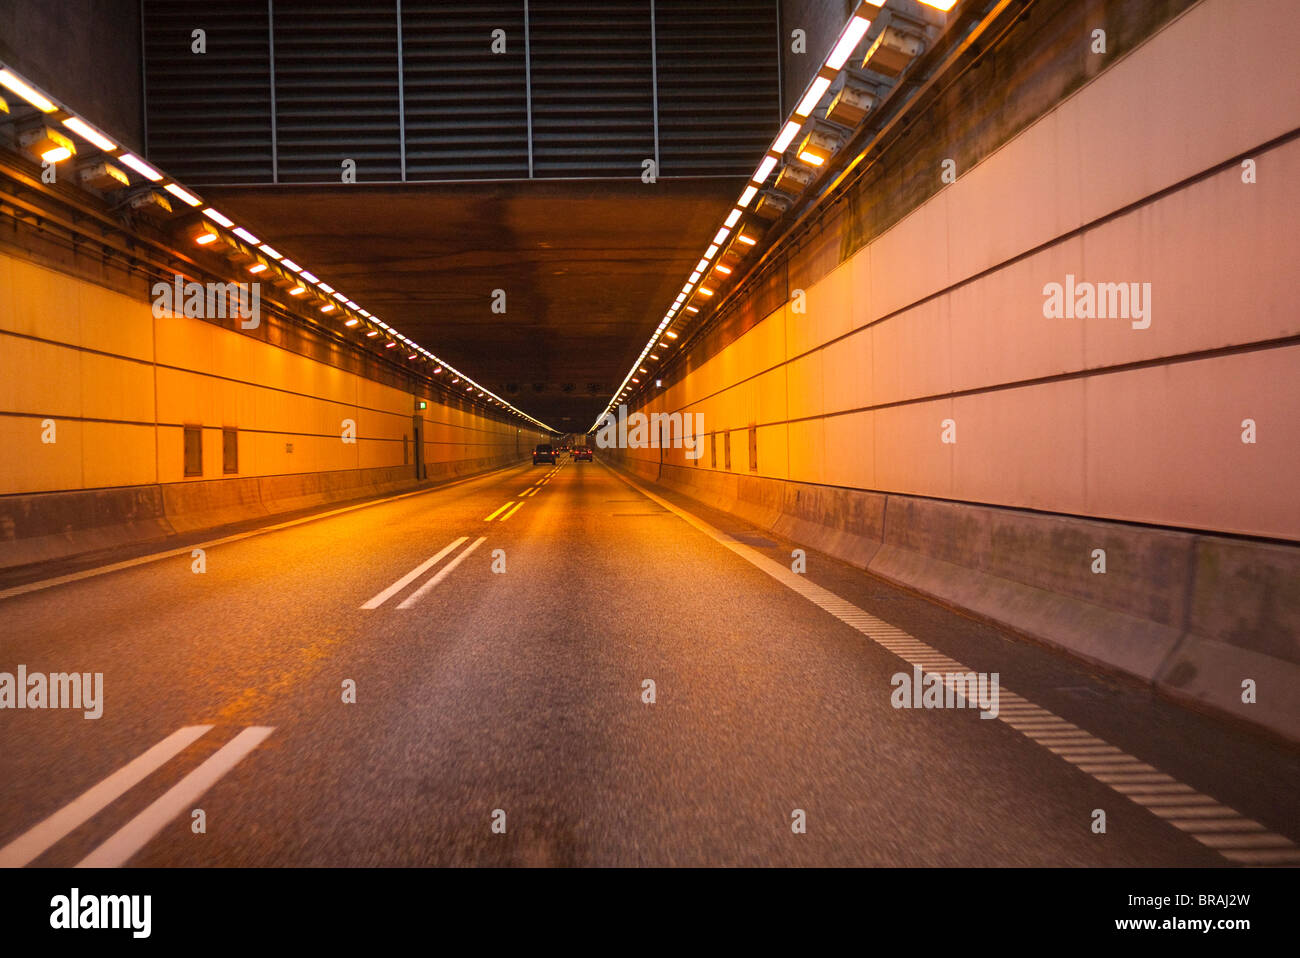 The tunnel leading to öresund bridge between copenhagen and Malmö Stock Photo